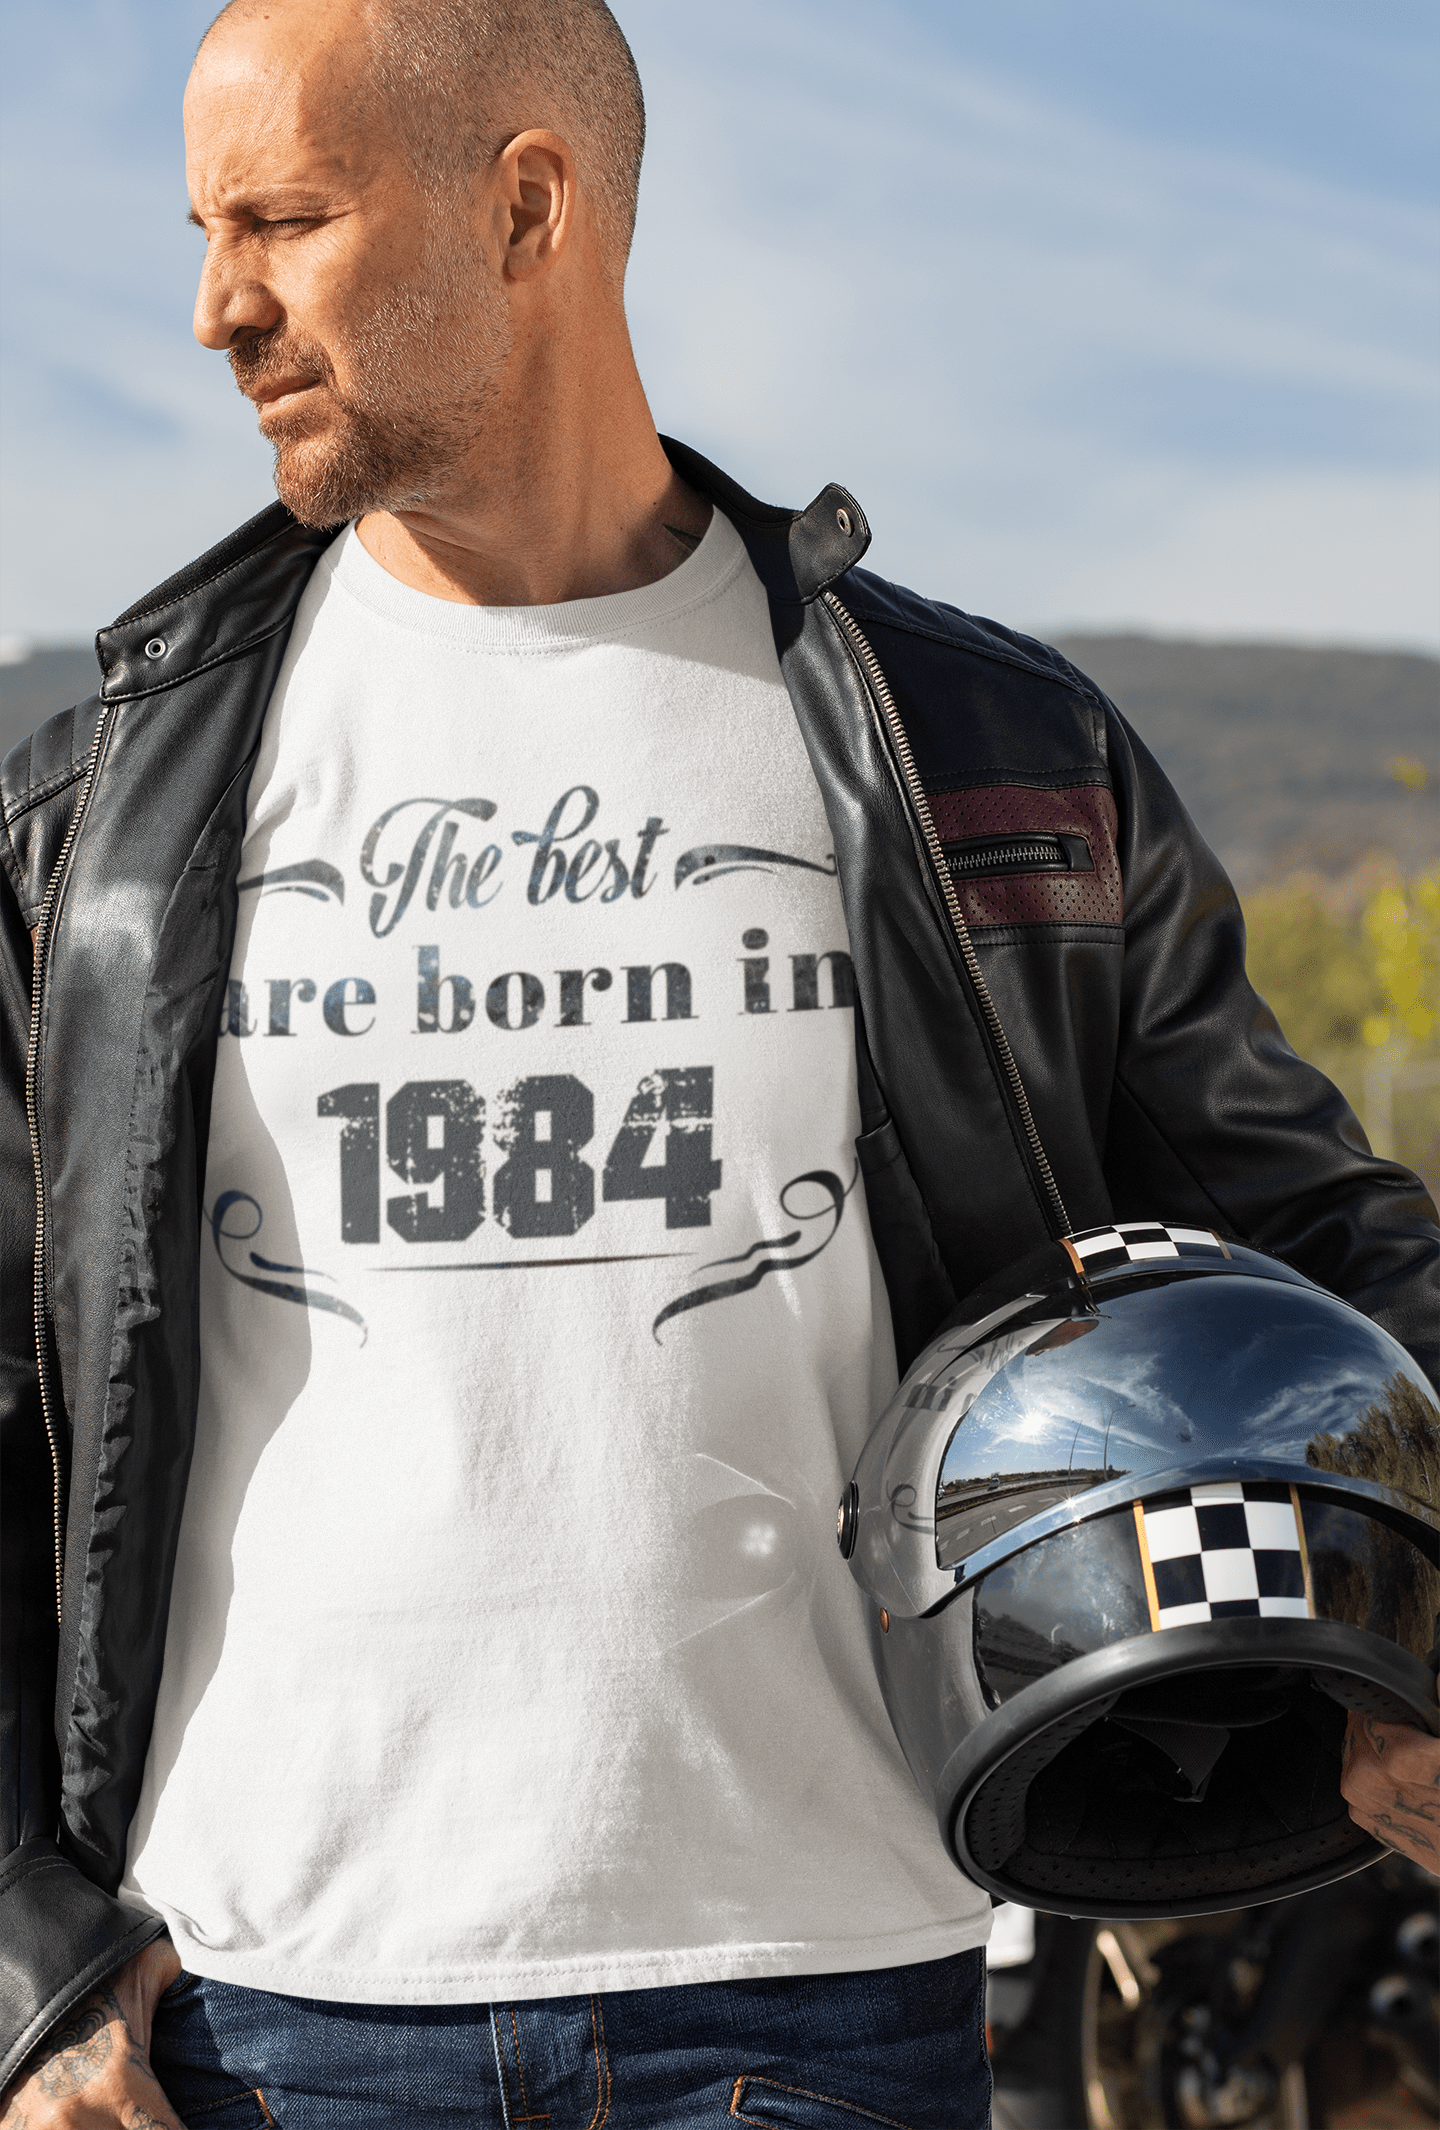 The Best are Born in 1984 Men's T-shirt Blanc Anniversaire Cadeau 00398